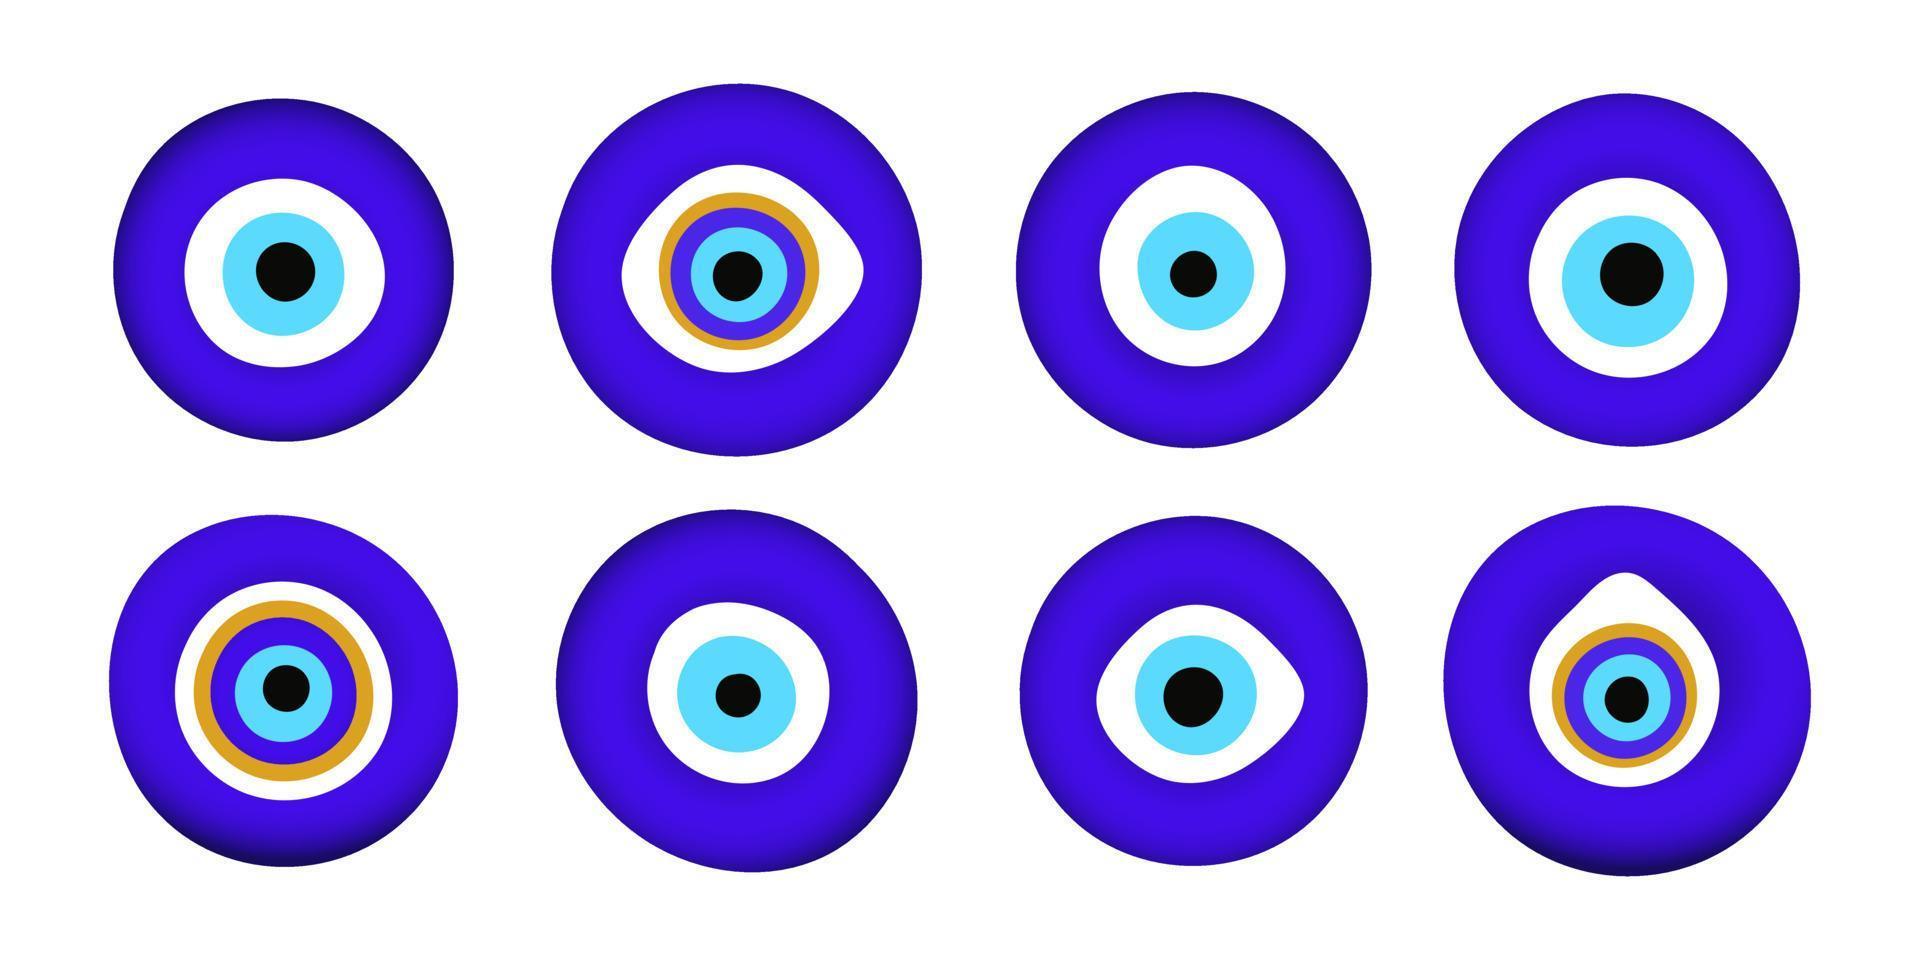 blå orientaliska onda ögat symbol amulett platt stil design vektor illustration set isolerad på vit bakgrund.